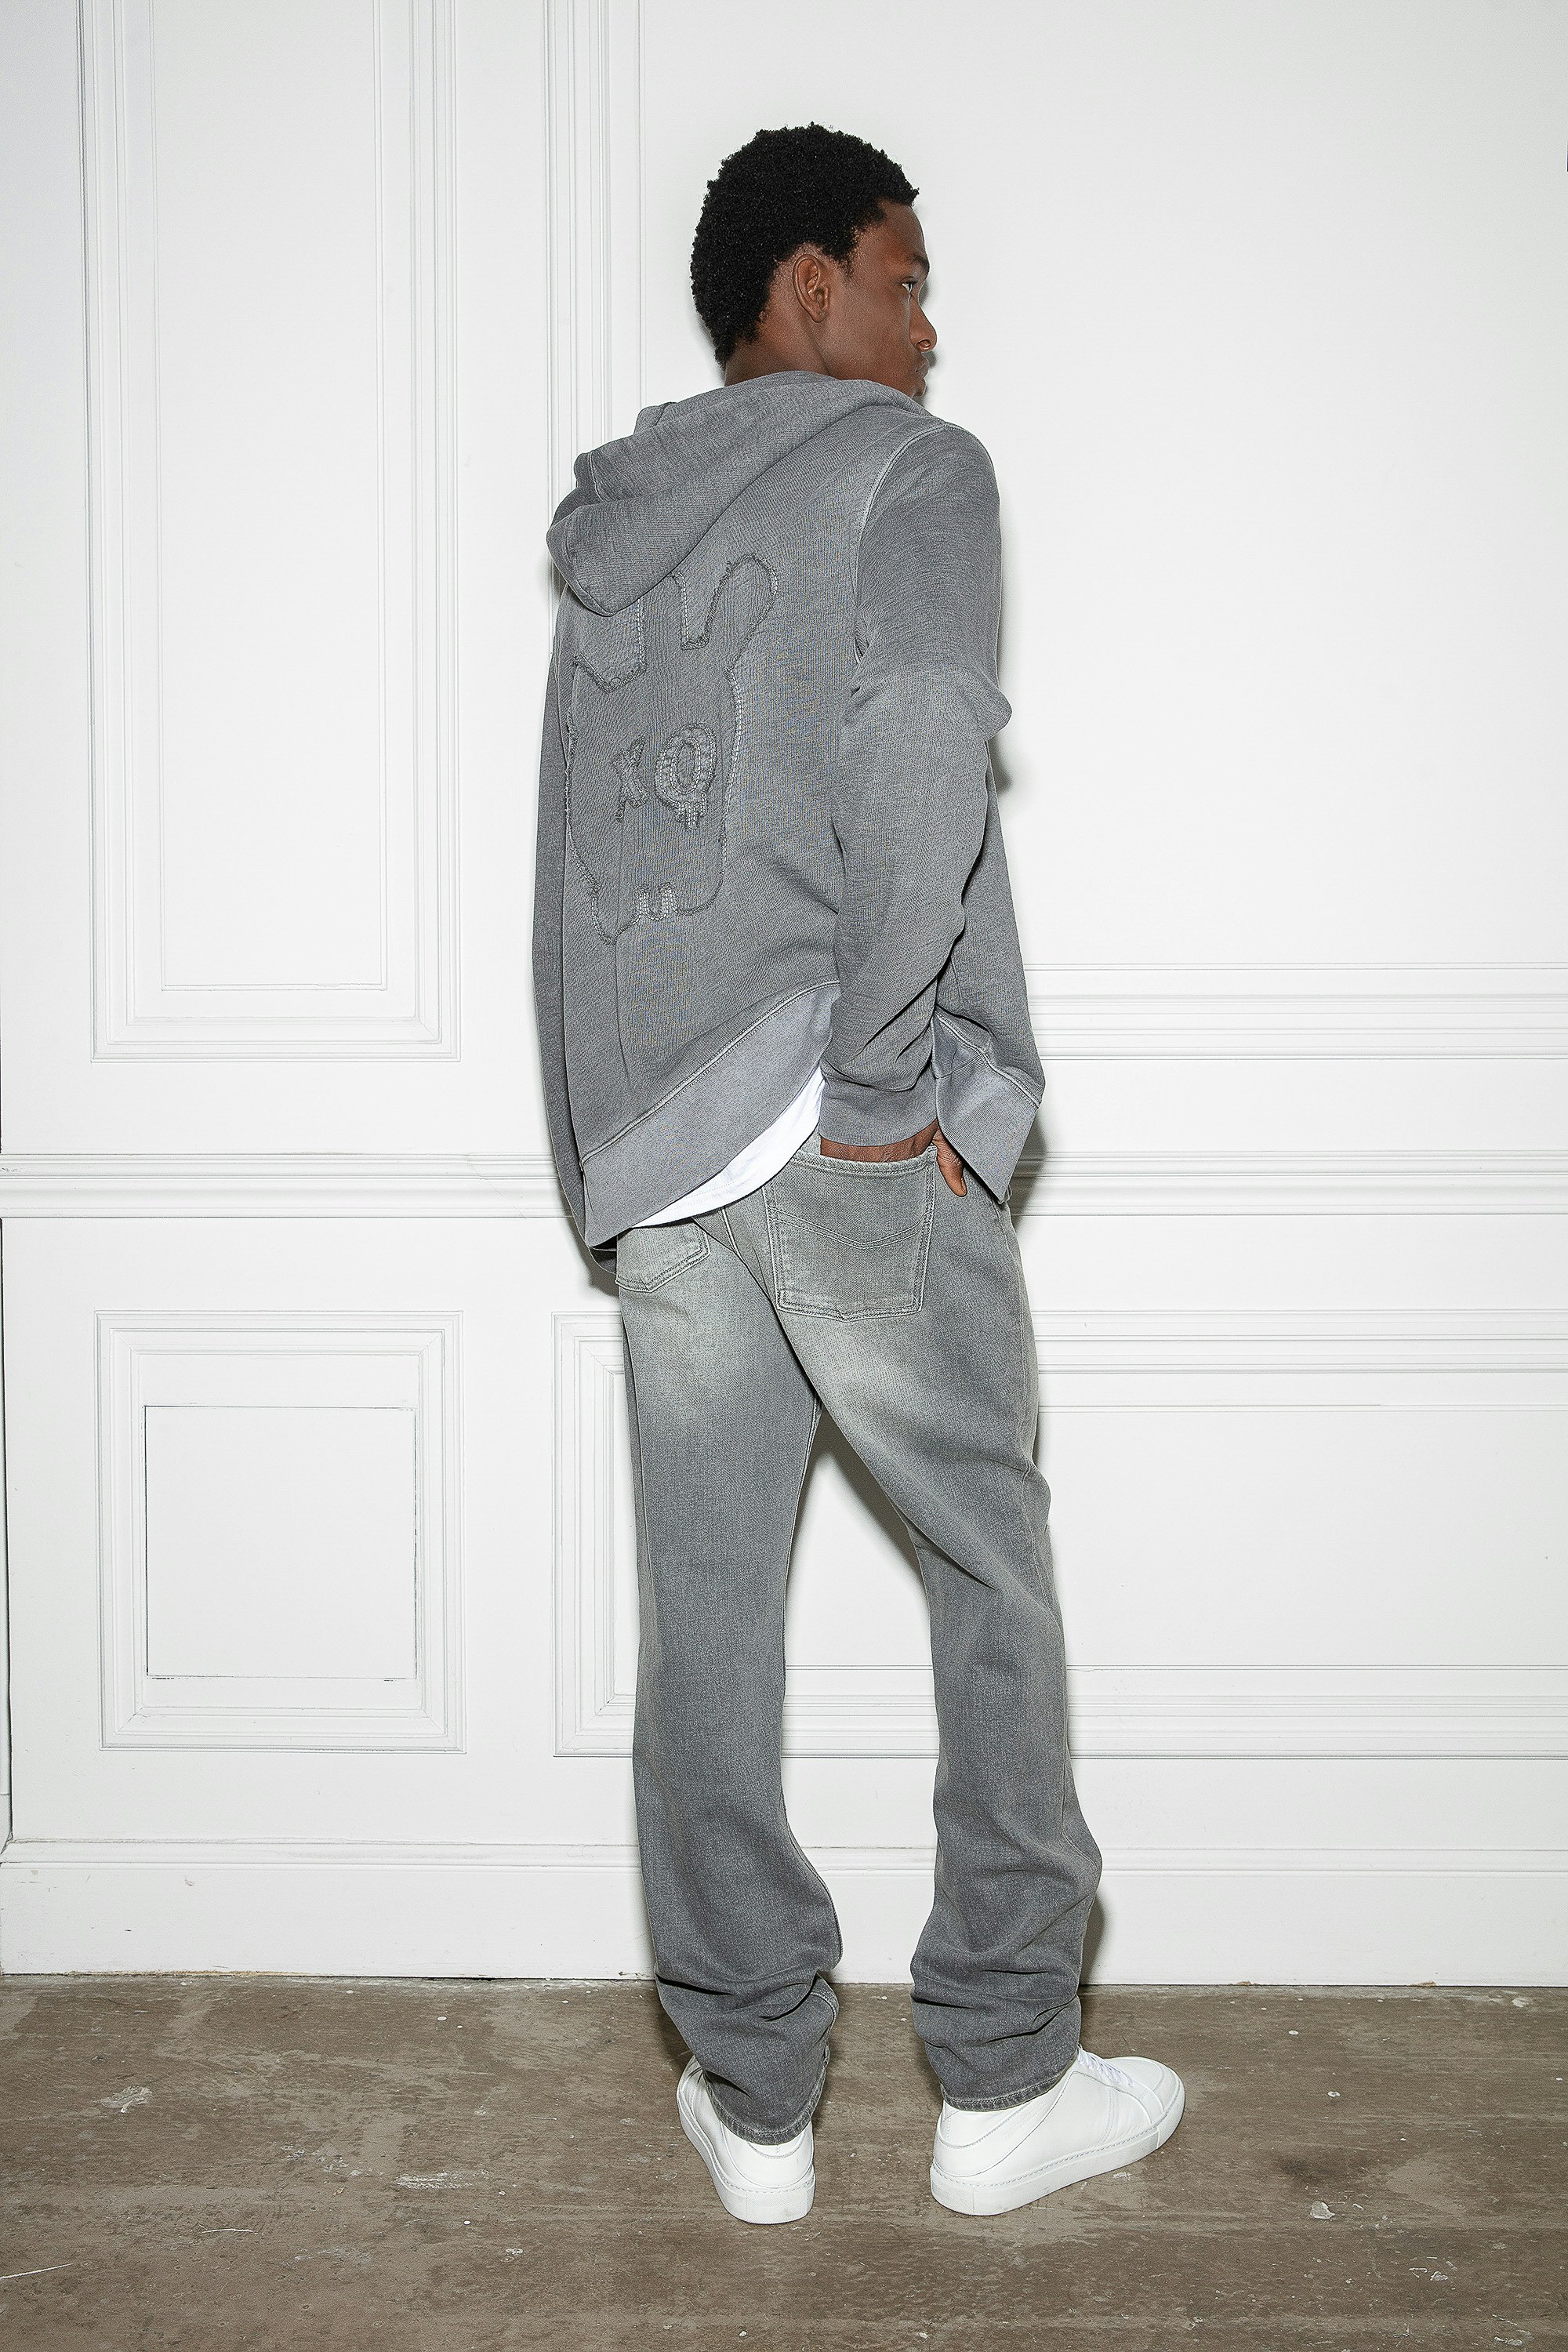 Felpa Alex Skull - Felpa in cotone grigio con zip, cappuccio, tasche e toppa Skull XO.